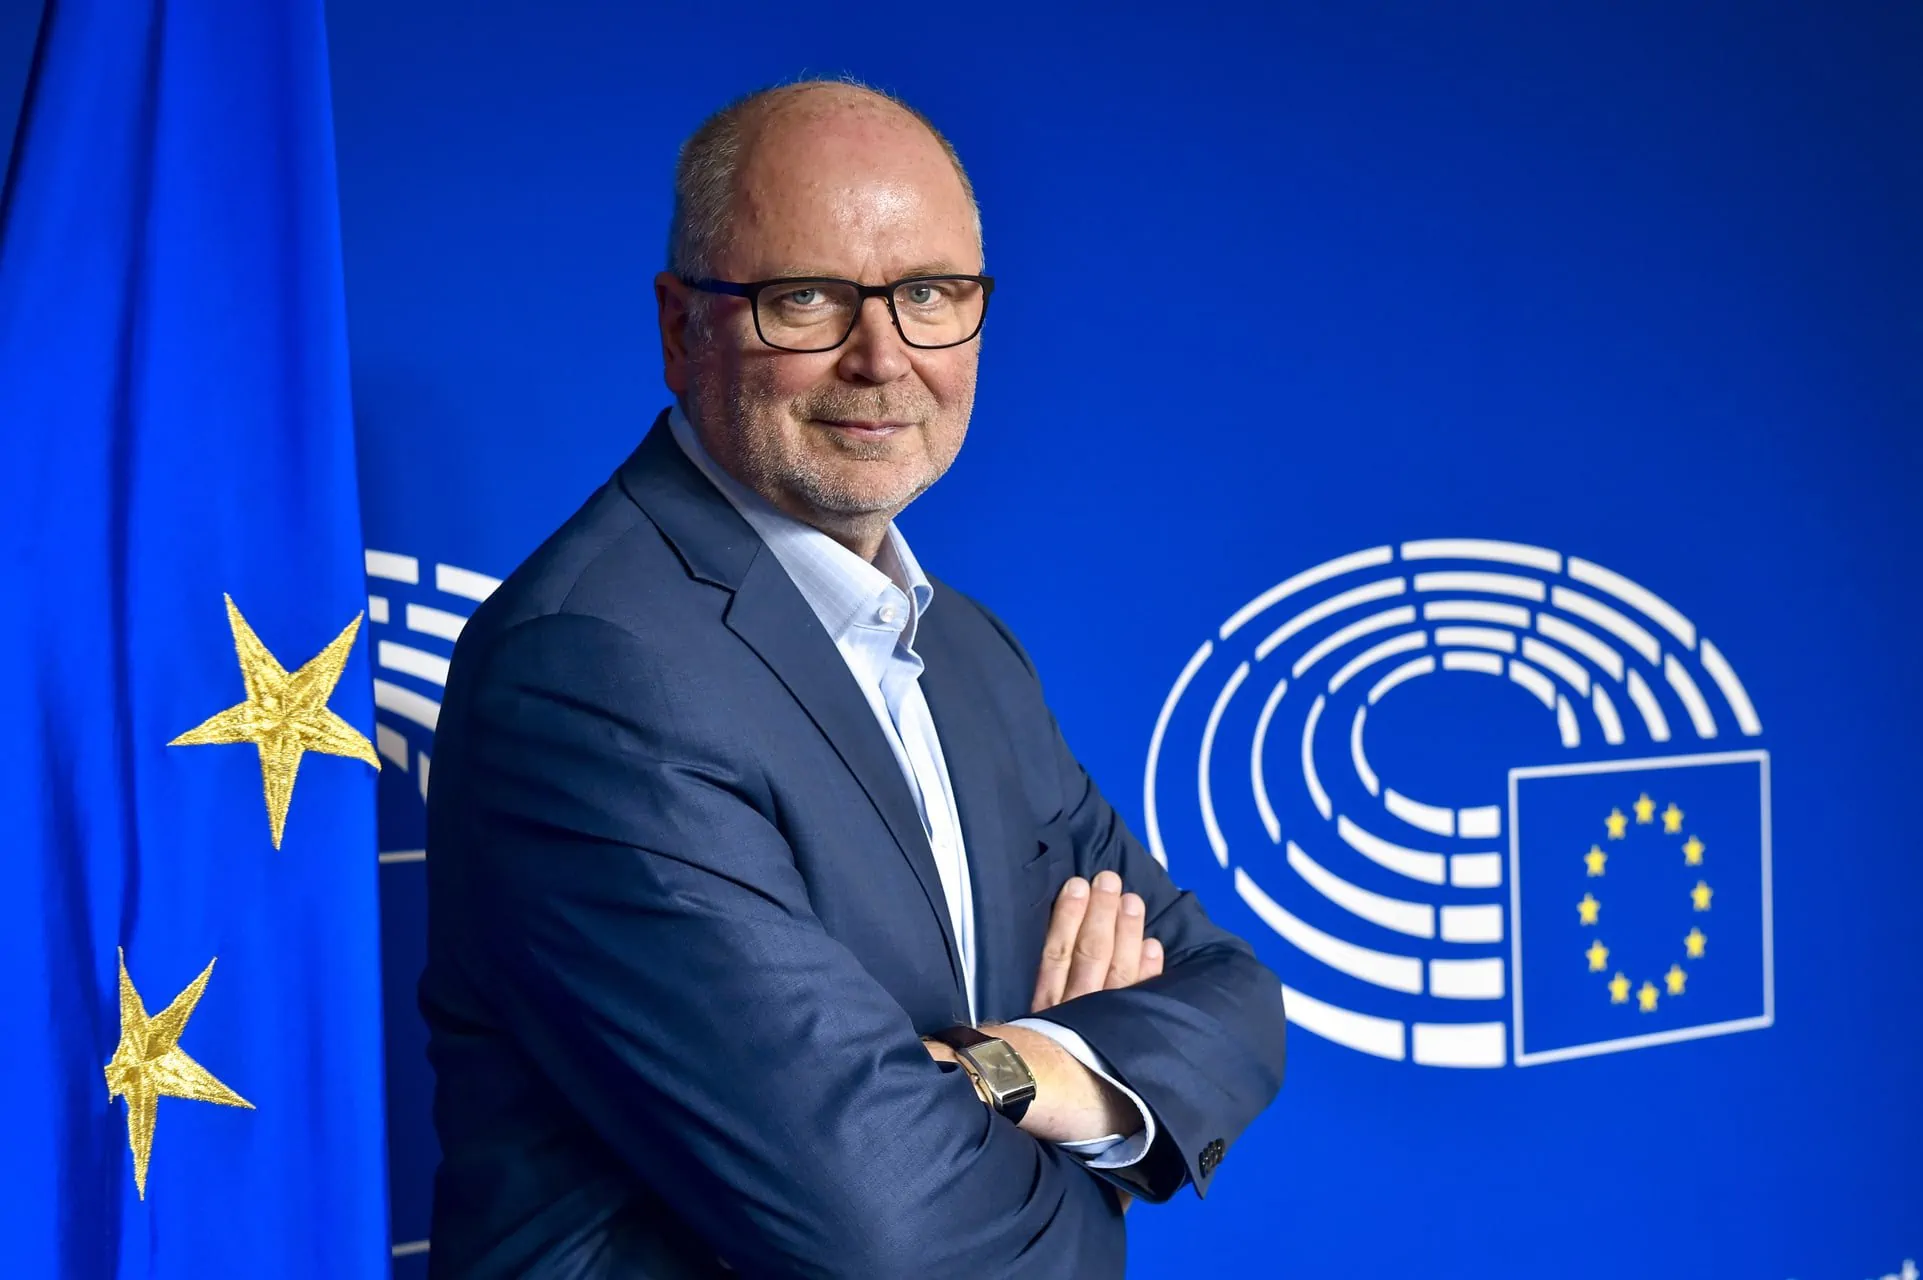 MEP Heinäluoma pääministeri Orpolle: “Eikö olisi aika nostaa suomalainen EU:n ensimmäiseksi puolustuskomissaariksi?”